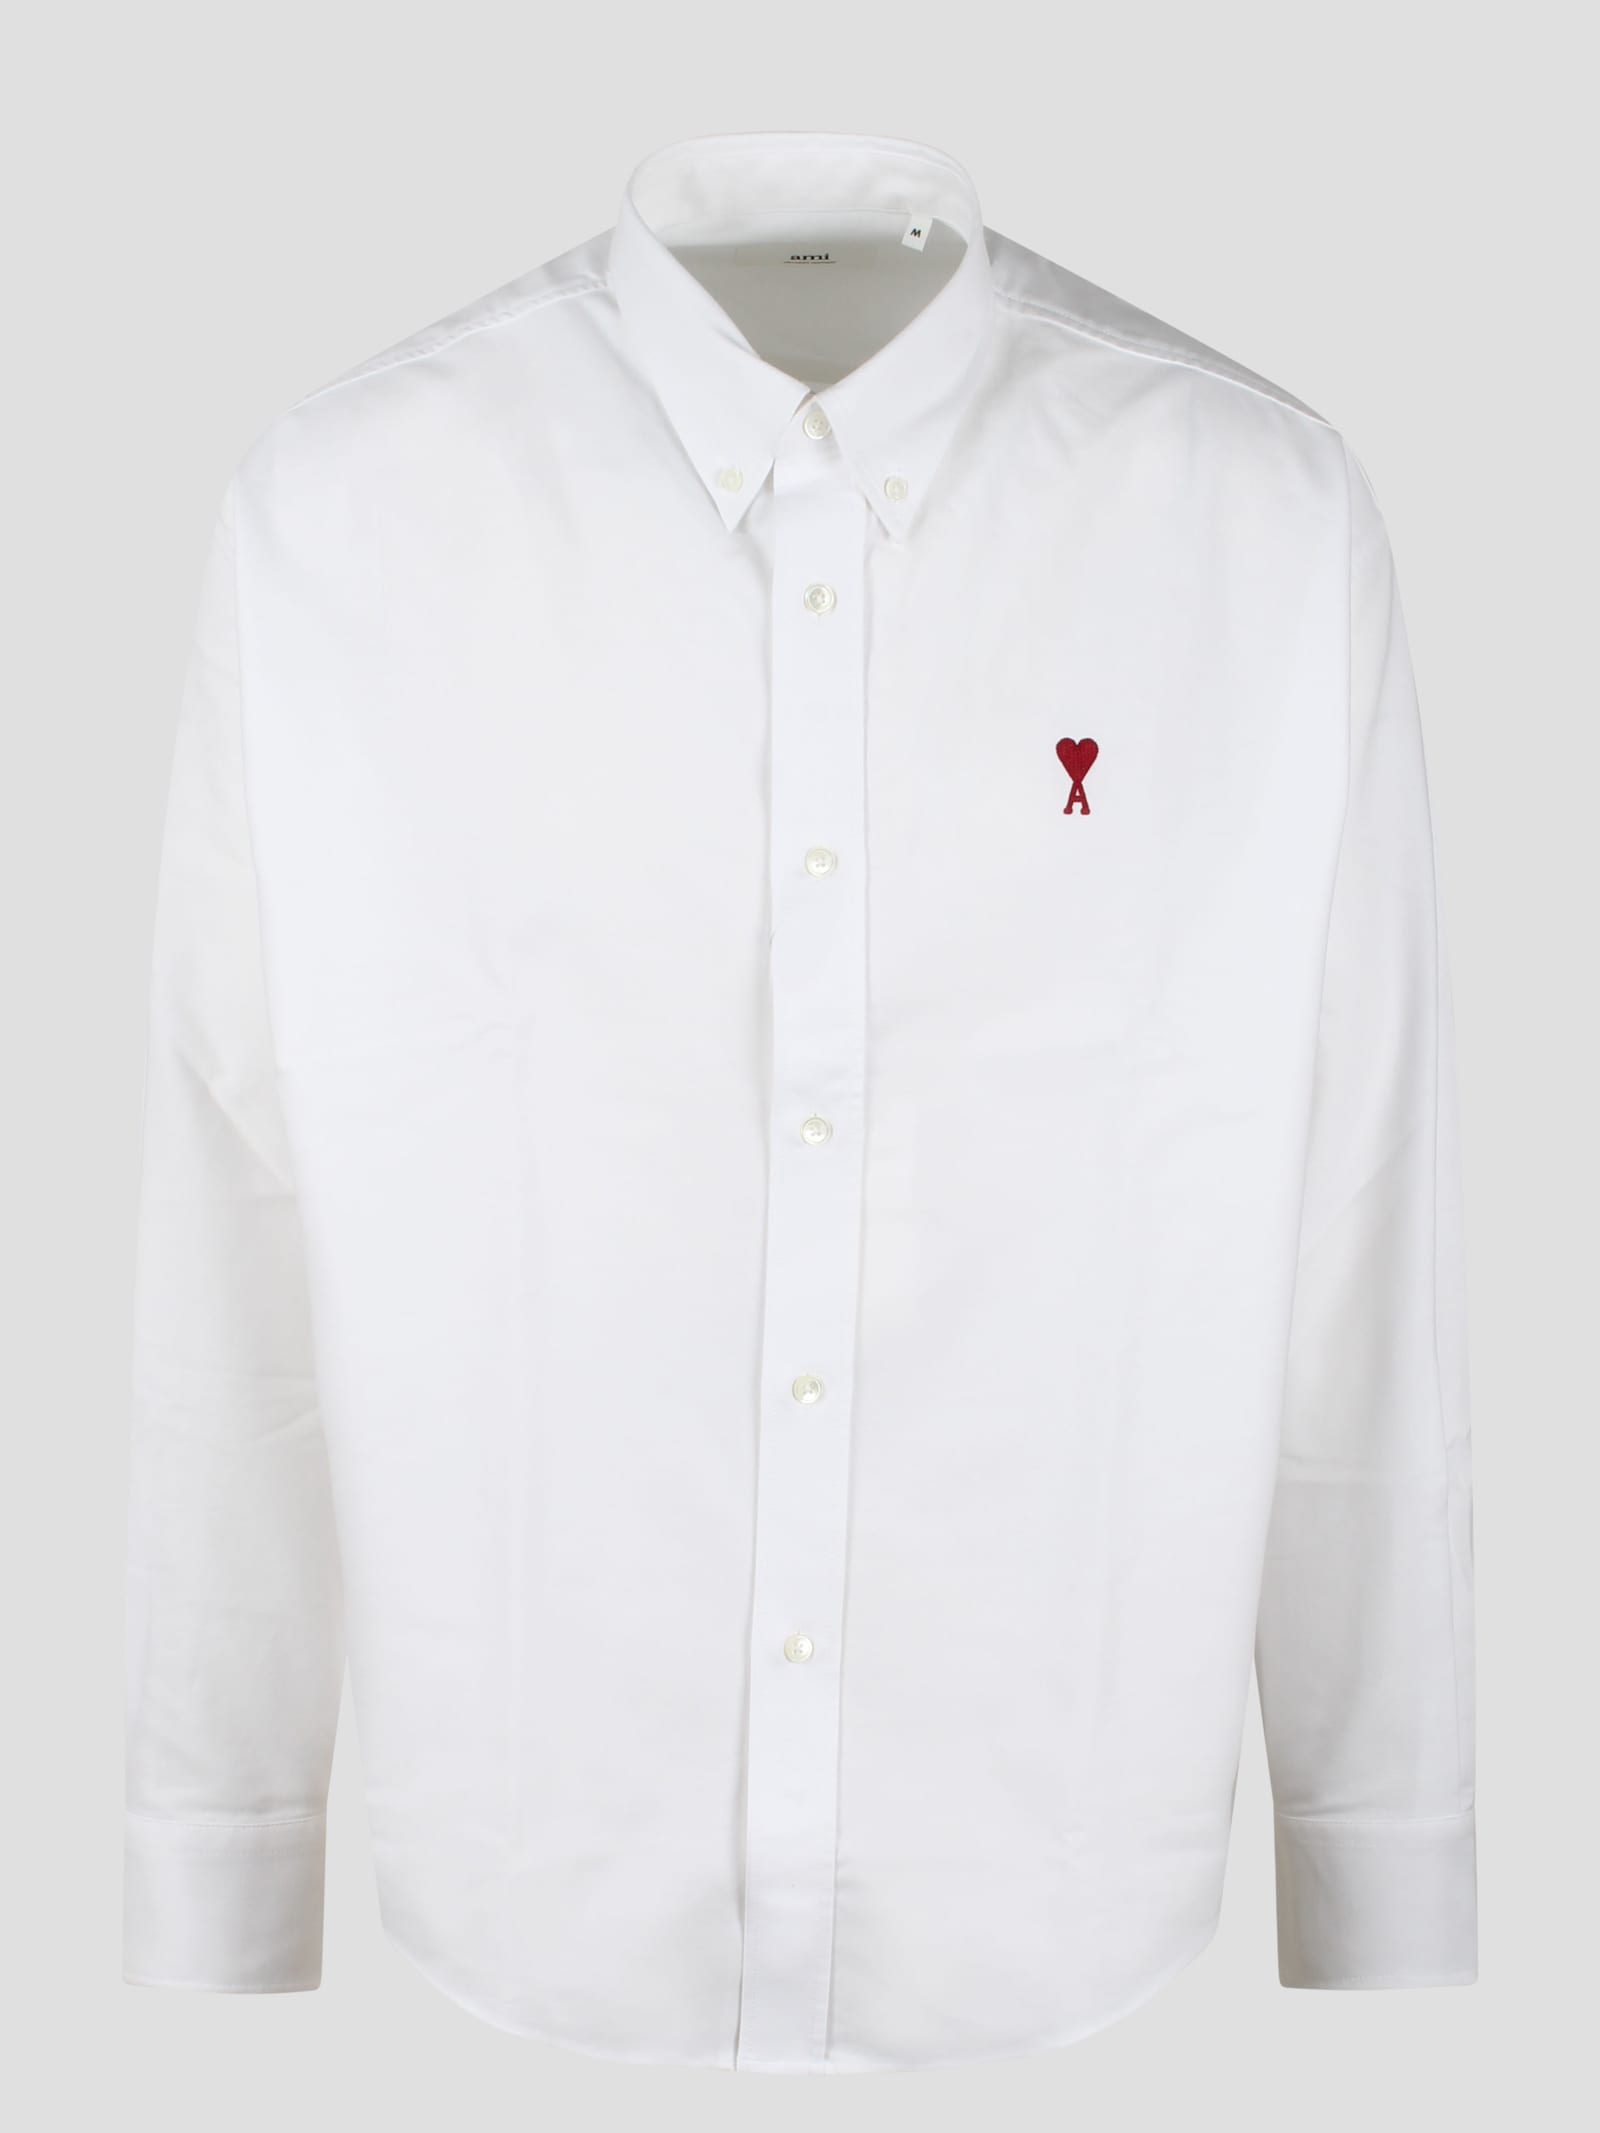 Ami Alexandre Mattiussi Ami De Coeur Oxford Shirt In White